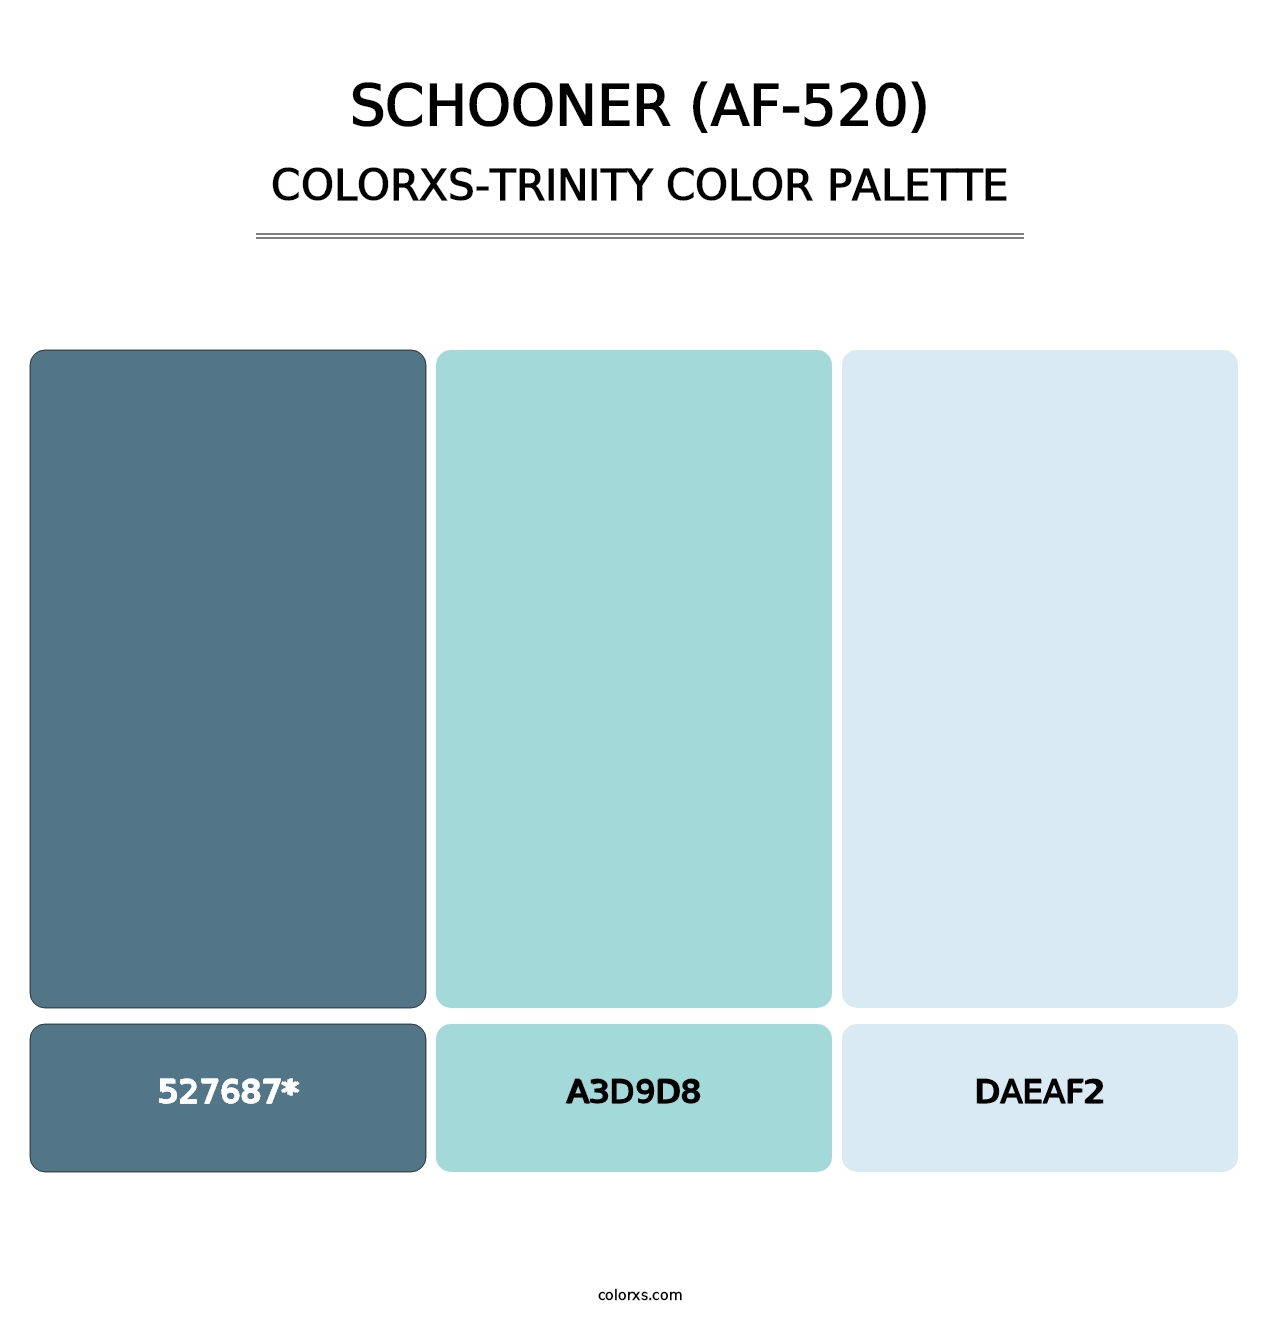 Schooner (AF-520) - Colorxs Trinity Palette